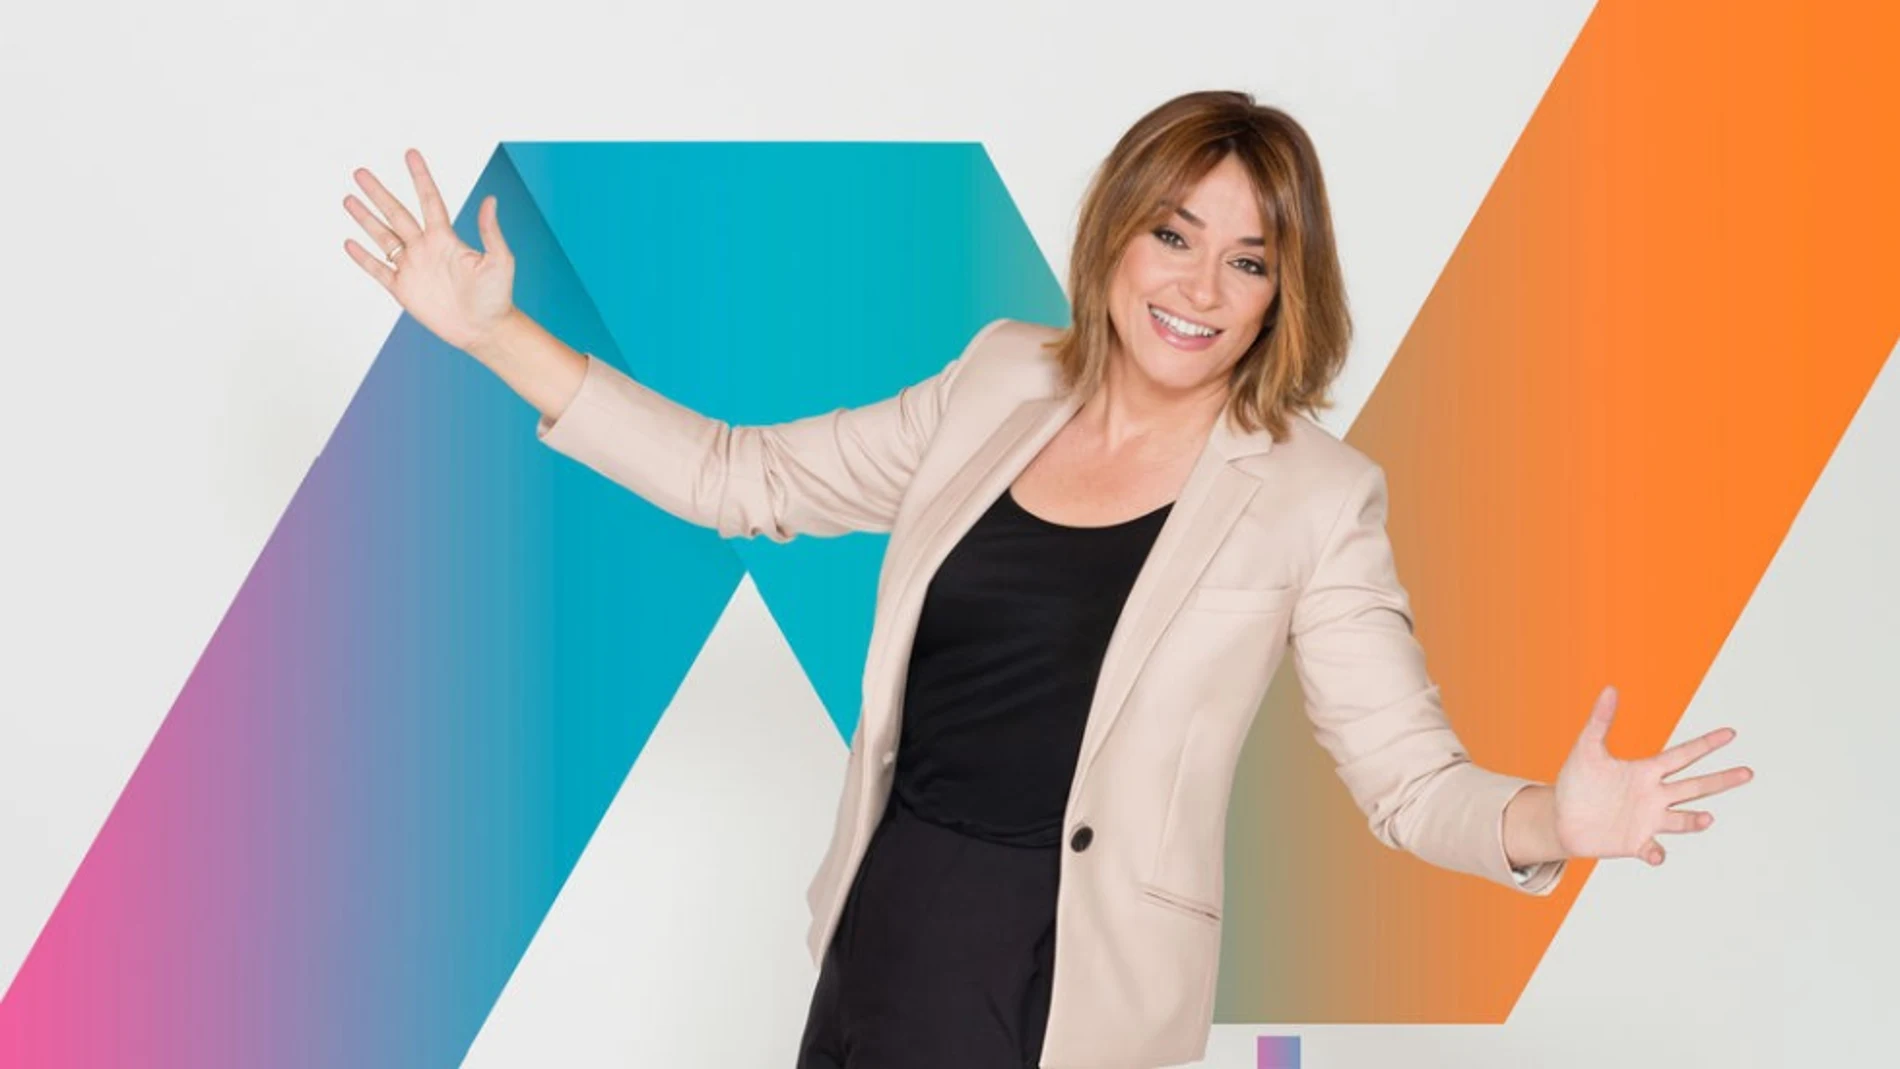 Toñi Moreno, presentadora de Telecinco / MEDIASET ESPAÑA